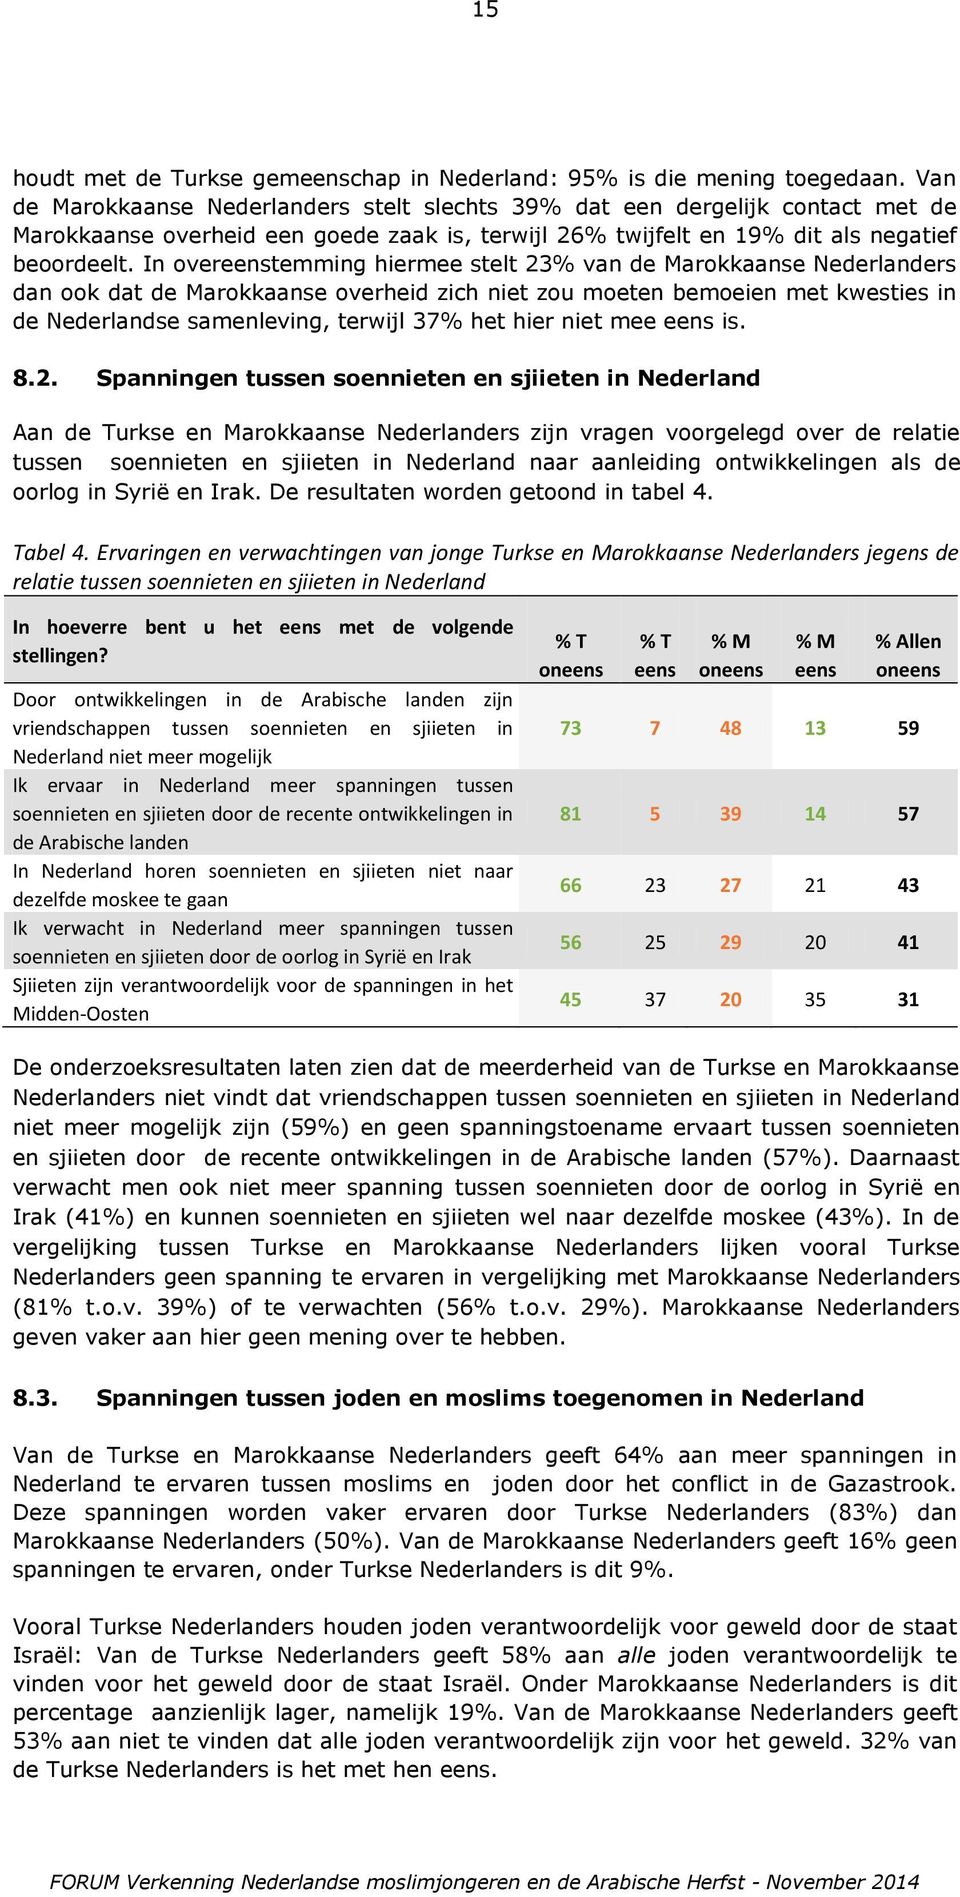 In overeenstemming hiermee stelt 23% van de Marokkaanse Nederlanders dan ook dat de Marokkaanse overheid zich niet zou moeten bemoeien met kwesties in de Nederlandse samenleving, terwijl 37% het hier